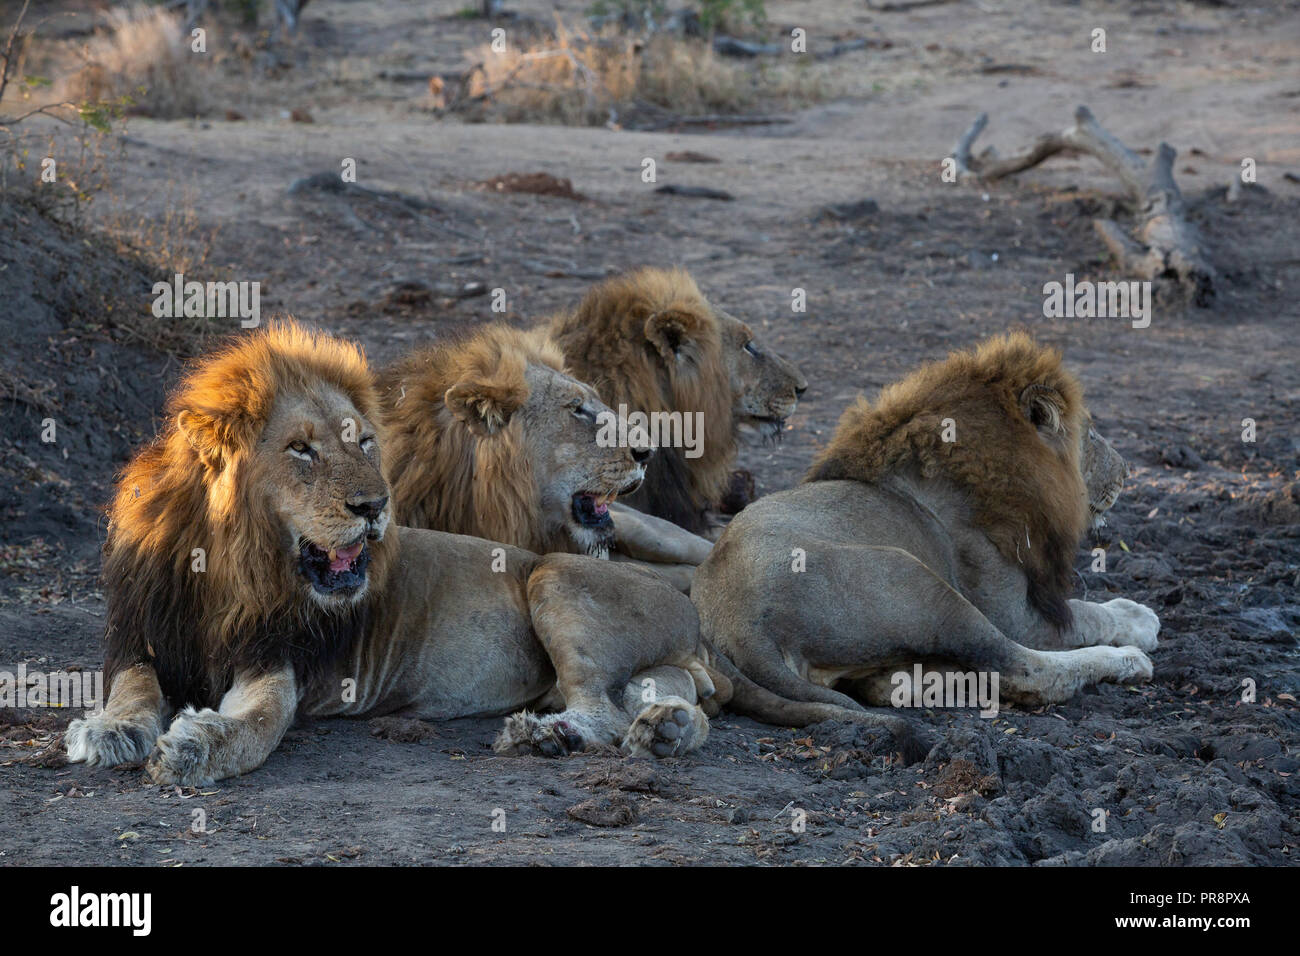 Frères lion couché ensemble après étancher leur soif à un point d'eau à proximité - image capturée dans le Parc National Kruger Banque D'Images